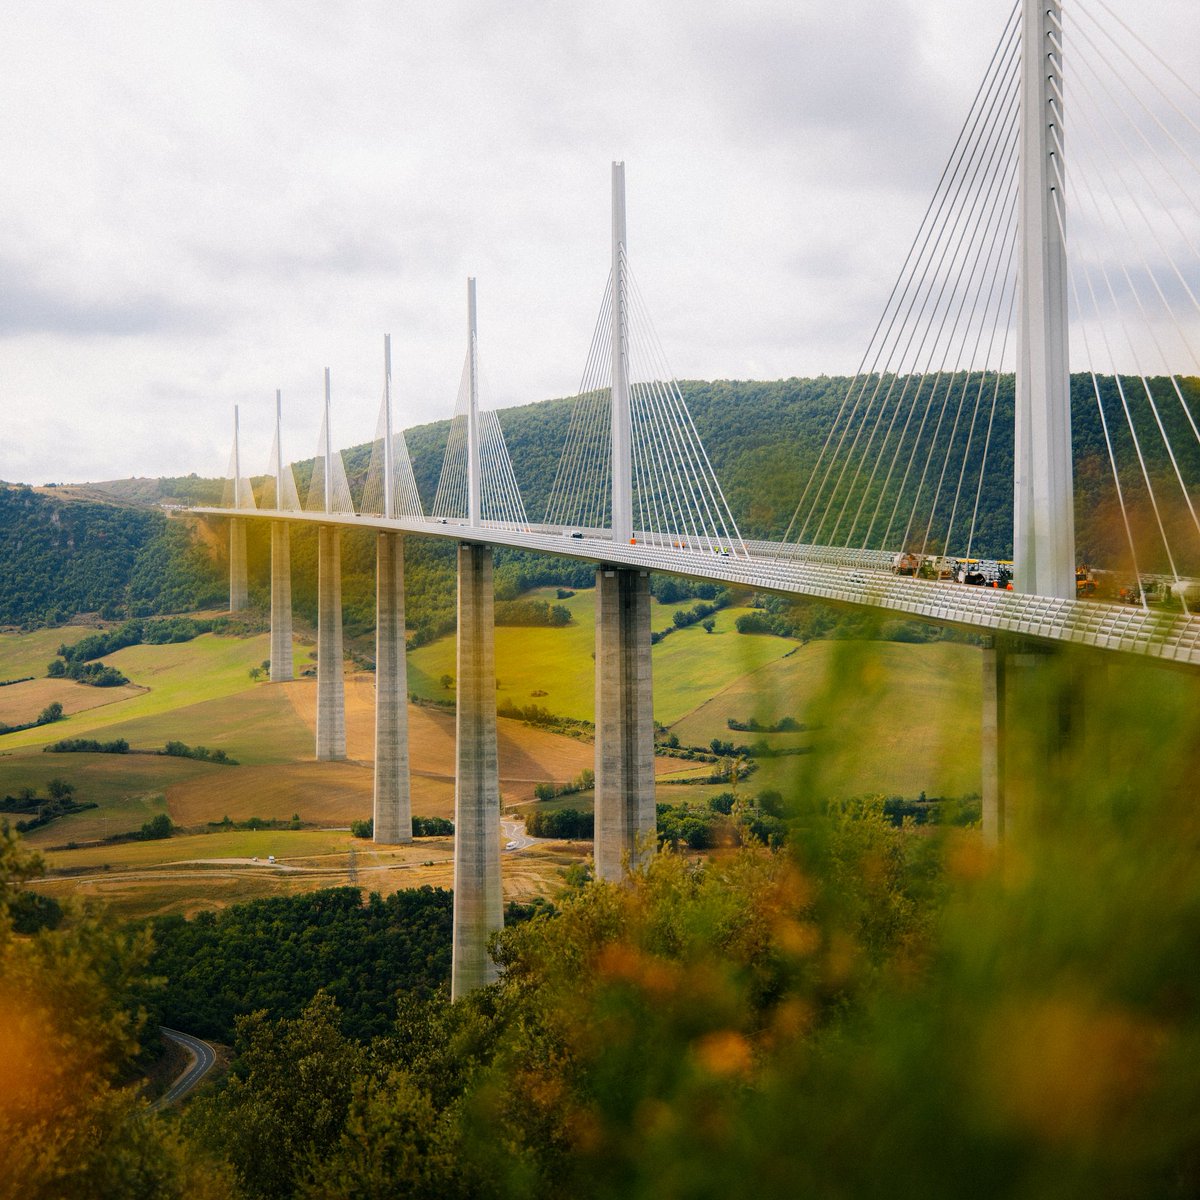 [✨ À (re)découvrir] Notre chef d’œuvre d’architecture dans l'Aveyron : le Viaduc de Millau ! Vous l'avez déjà traversé ? 👀 #VoyageOccitanie #ViaducMillau 📷@Clarafotomania - @tourismeaveyron @ViaducDeMillaux